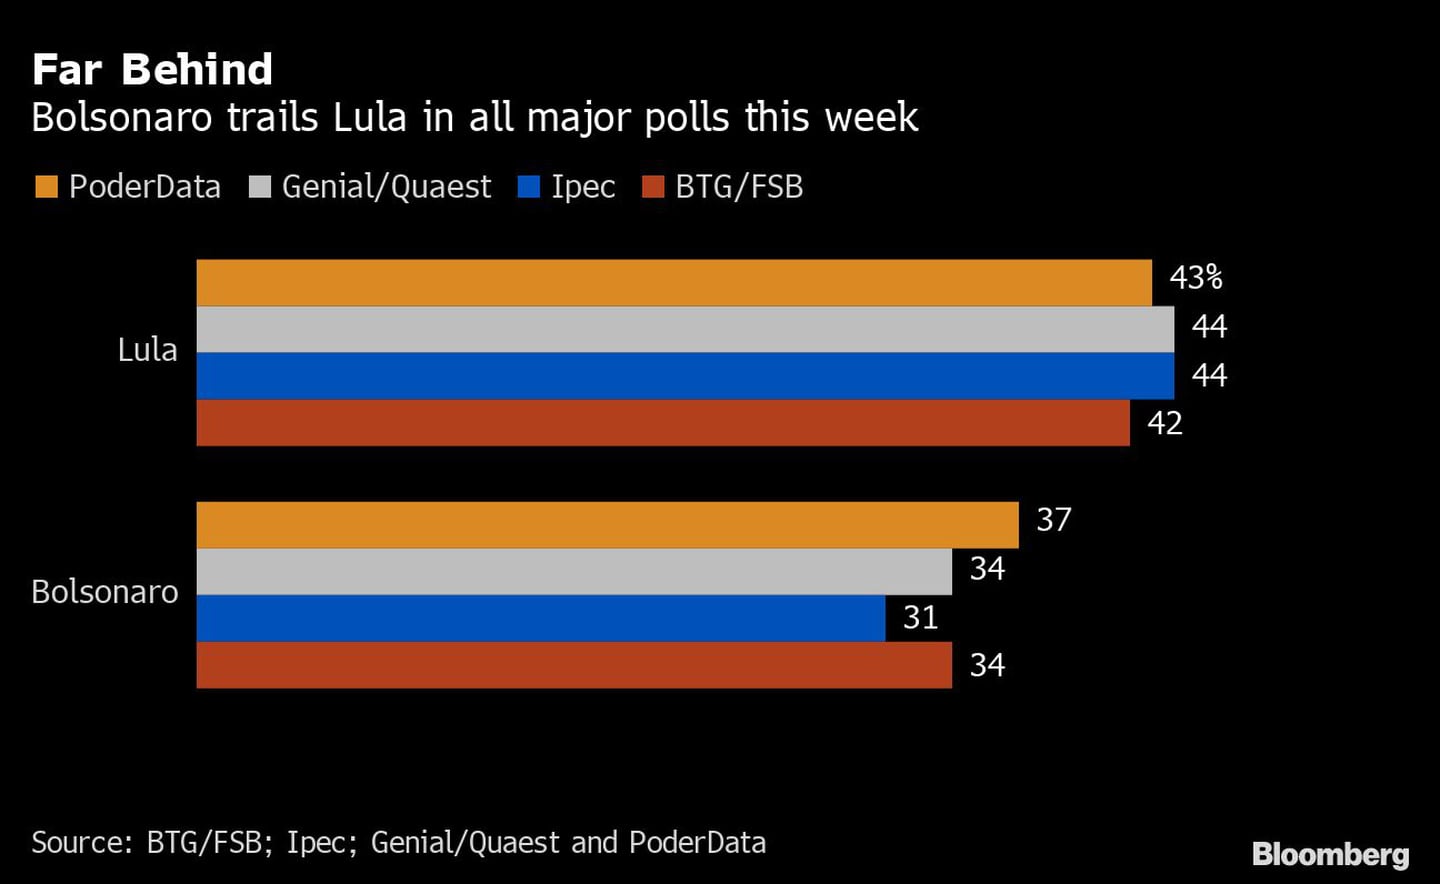 Bolsonaro está por detrás de Lula según las principales encuestasdfd